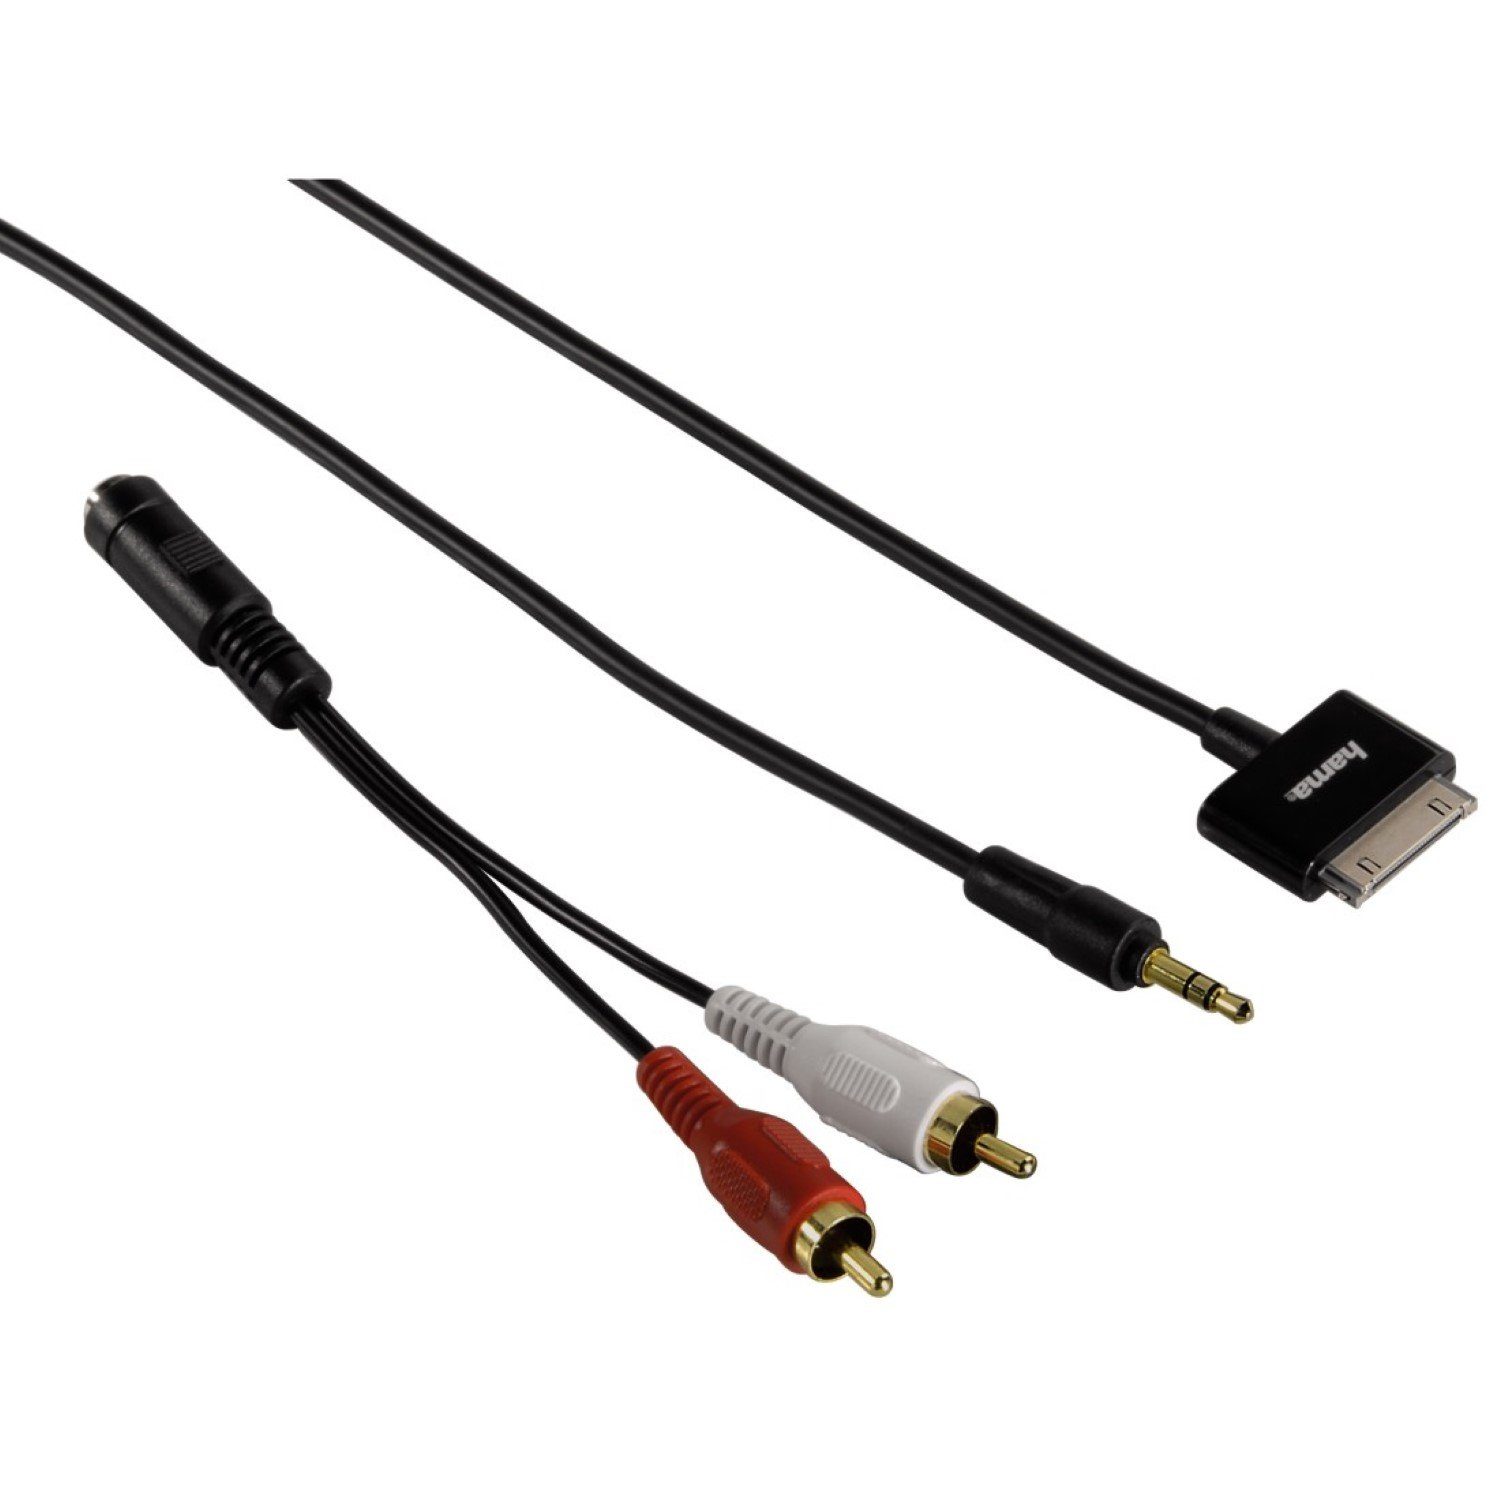 Hama »Audio-Kabel Adapter AUX 3,5mm Klinke > 30-Pin« Audio-Kabel, Cinch,  3,5-mm-Klinke (50 cm), Apple 30Pin Dock-Connector auf 3,5mm Klinken-Stecker  oder 2x RCA Cinch-Stecker, passend für iPod, iPhone oder iPad an HiFi Anlage